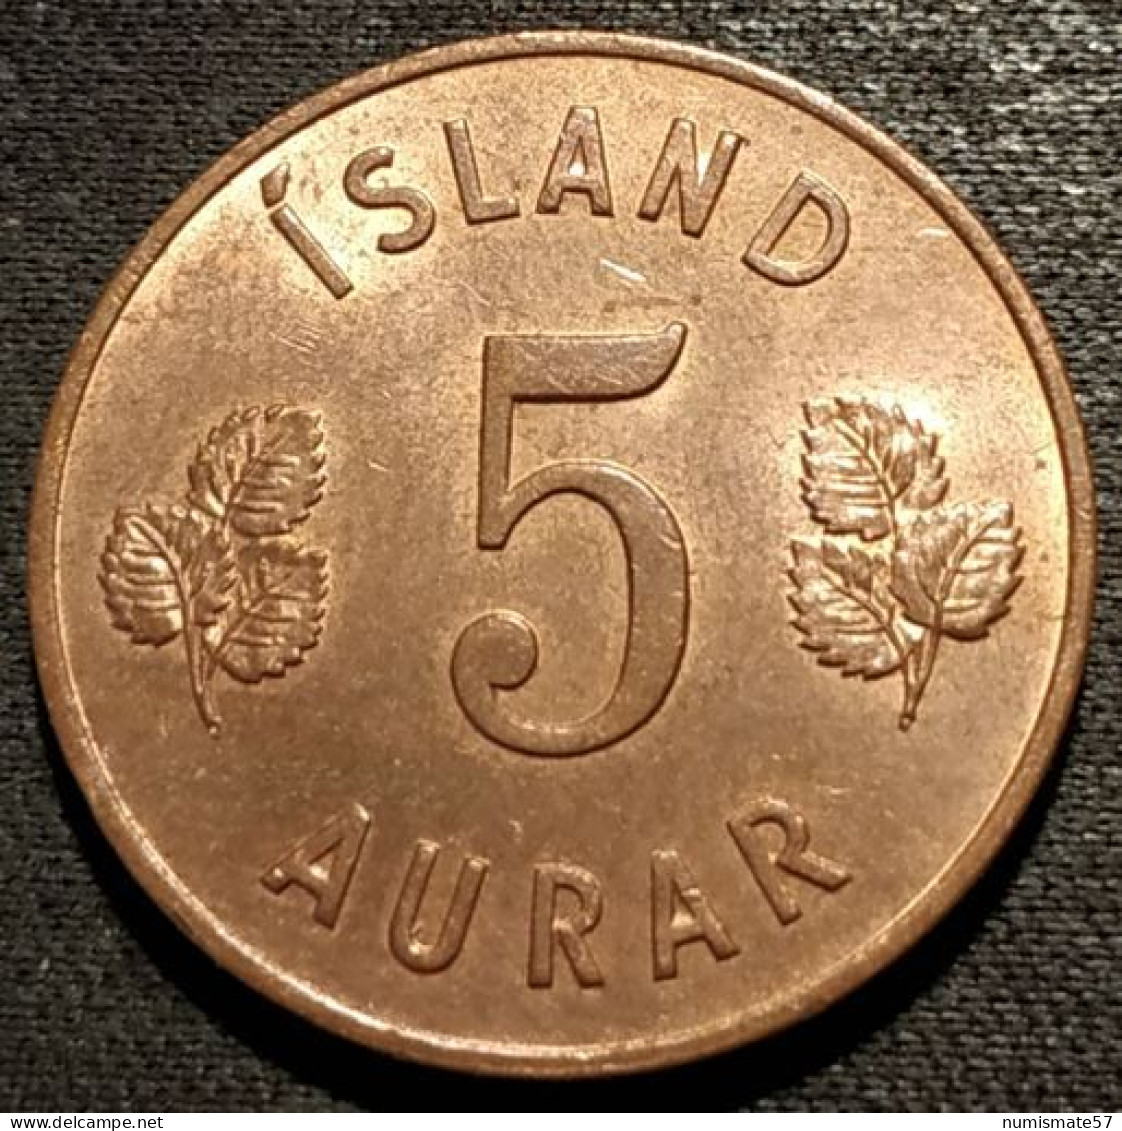 ISLANDE - ICELAND - 5 AURAR 1965 - KM 9 - ISLAND - Island